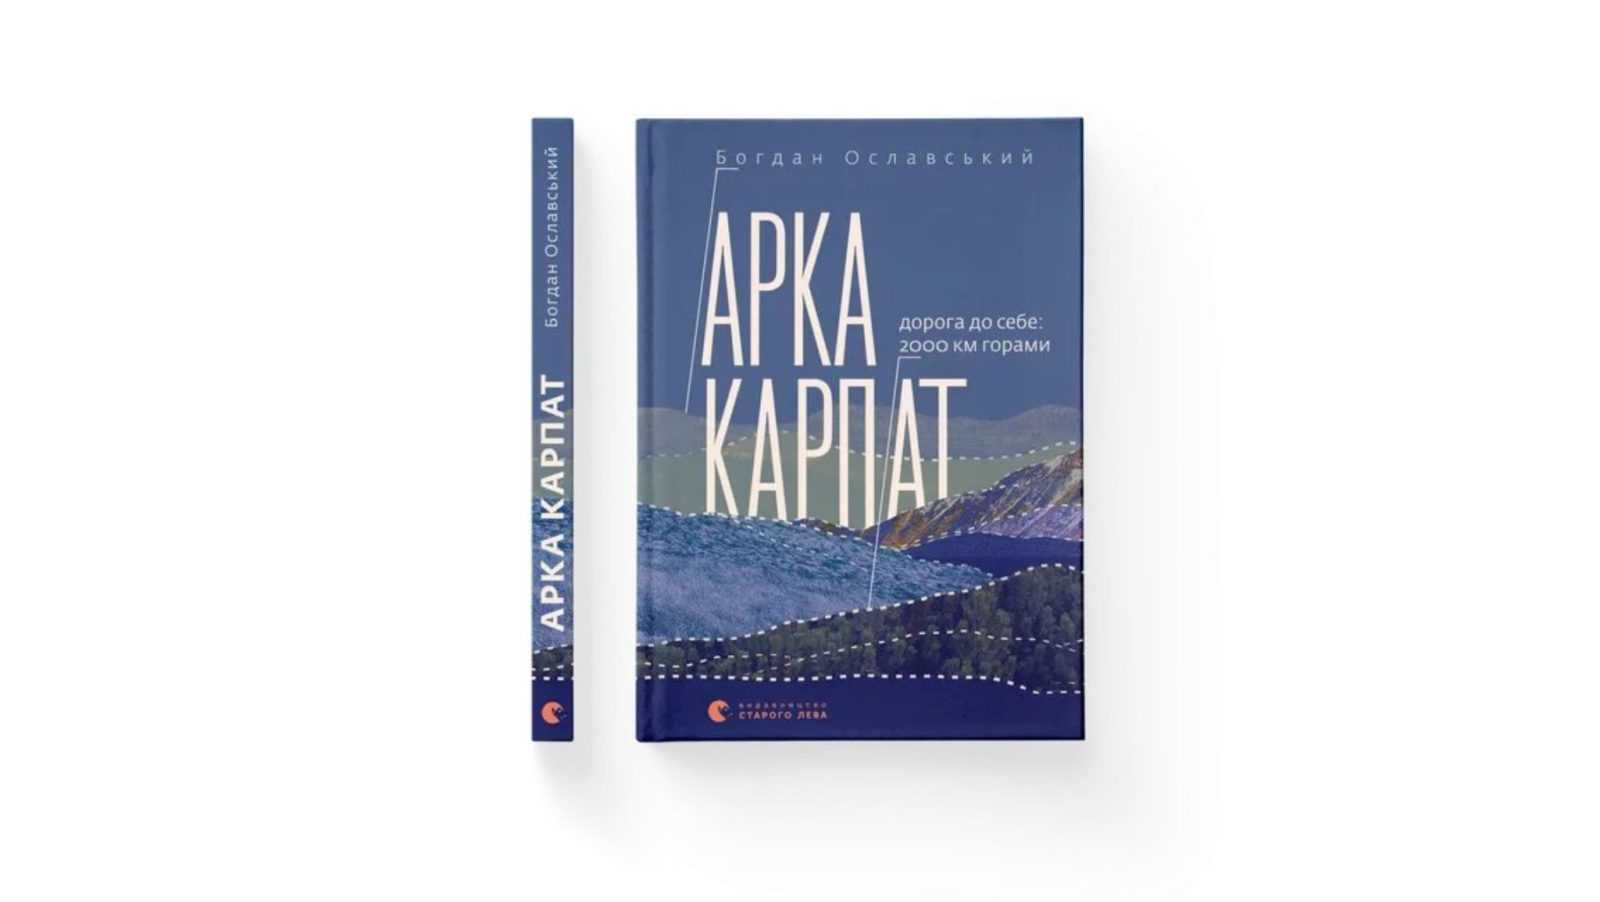 2000 км горами: франківець Богдан Ославський написав книжку про піші мандри Карпатами